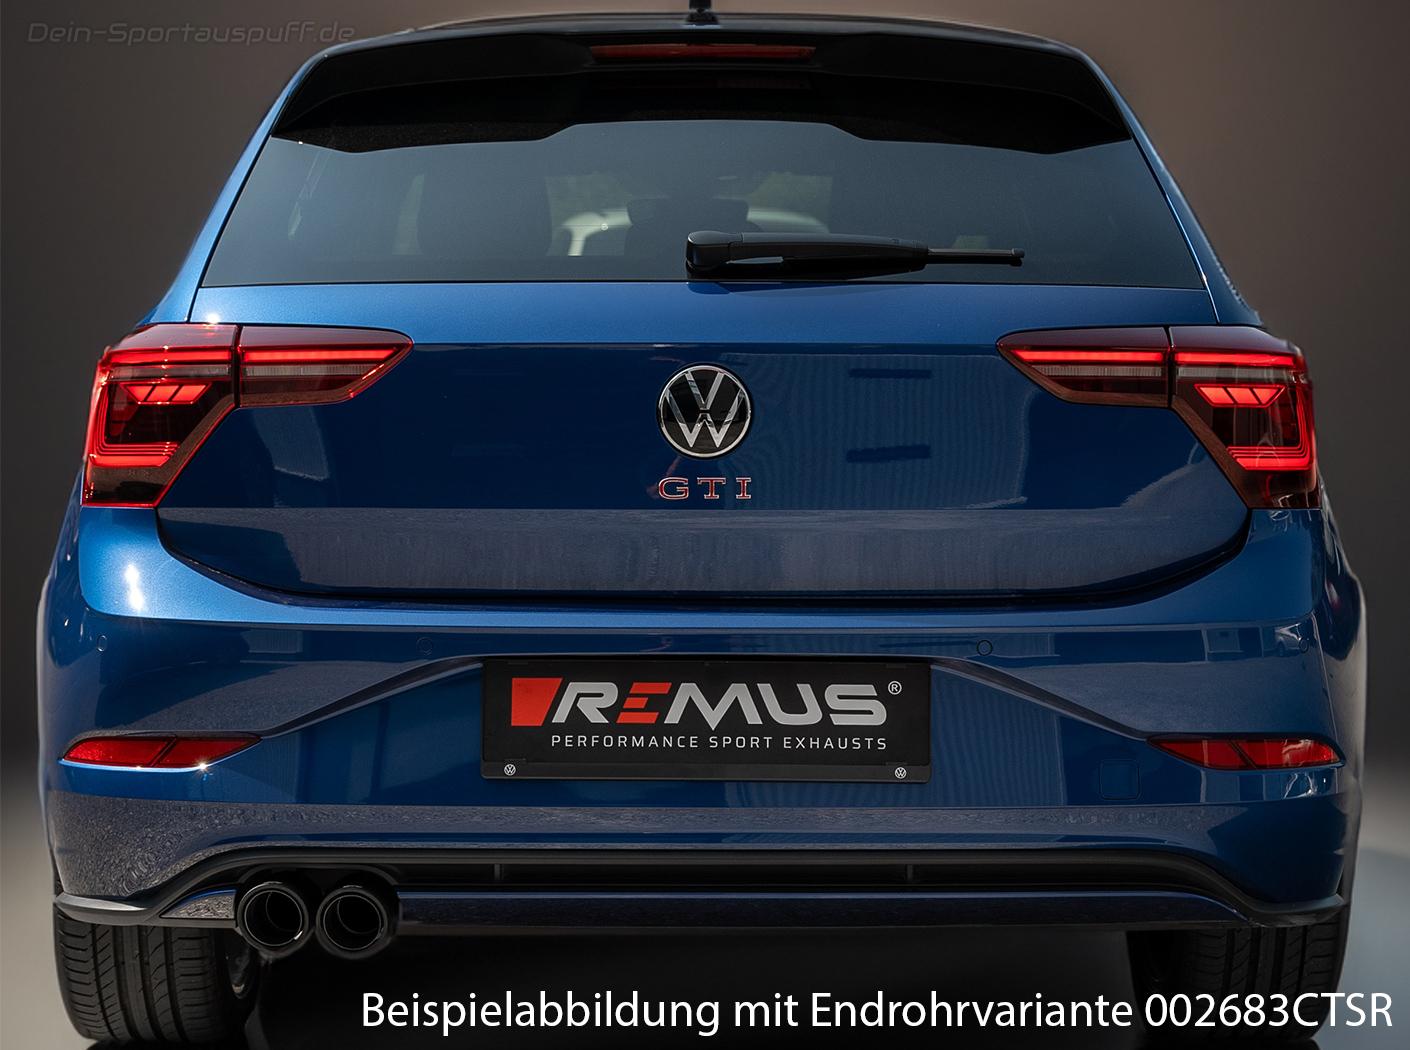 Remus Edelstahl Racing-Komplettanlage ab OPF VW Polo 6 GTI Typ AW (Mod. mit  OPF) ab 2019 inkl. Endrohrsatz nach Wahl günstig online kaufen - Dein- Sportauspuff.de